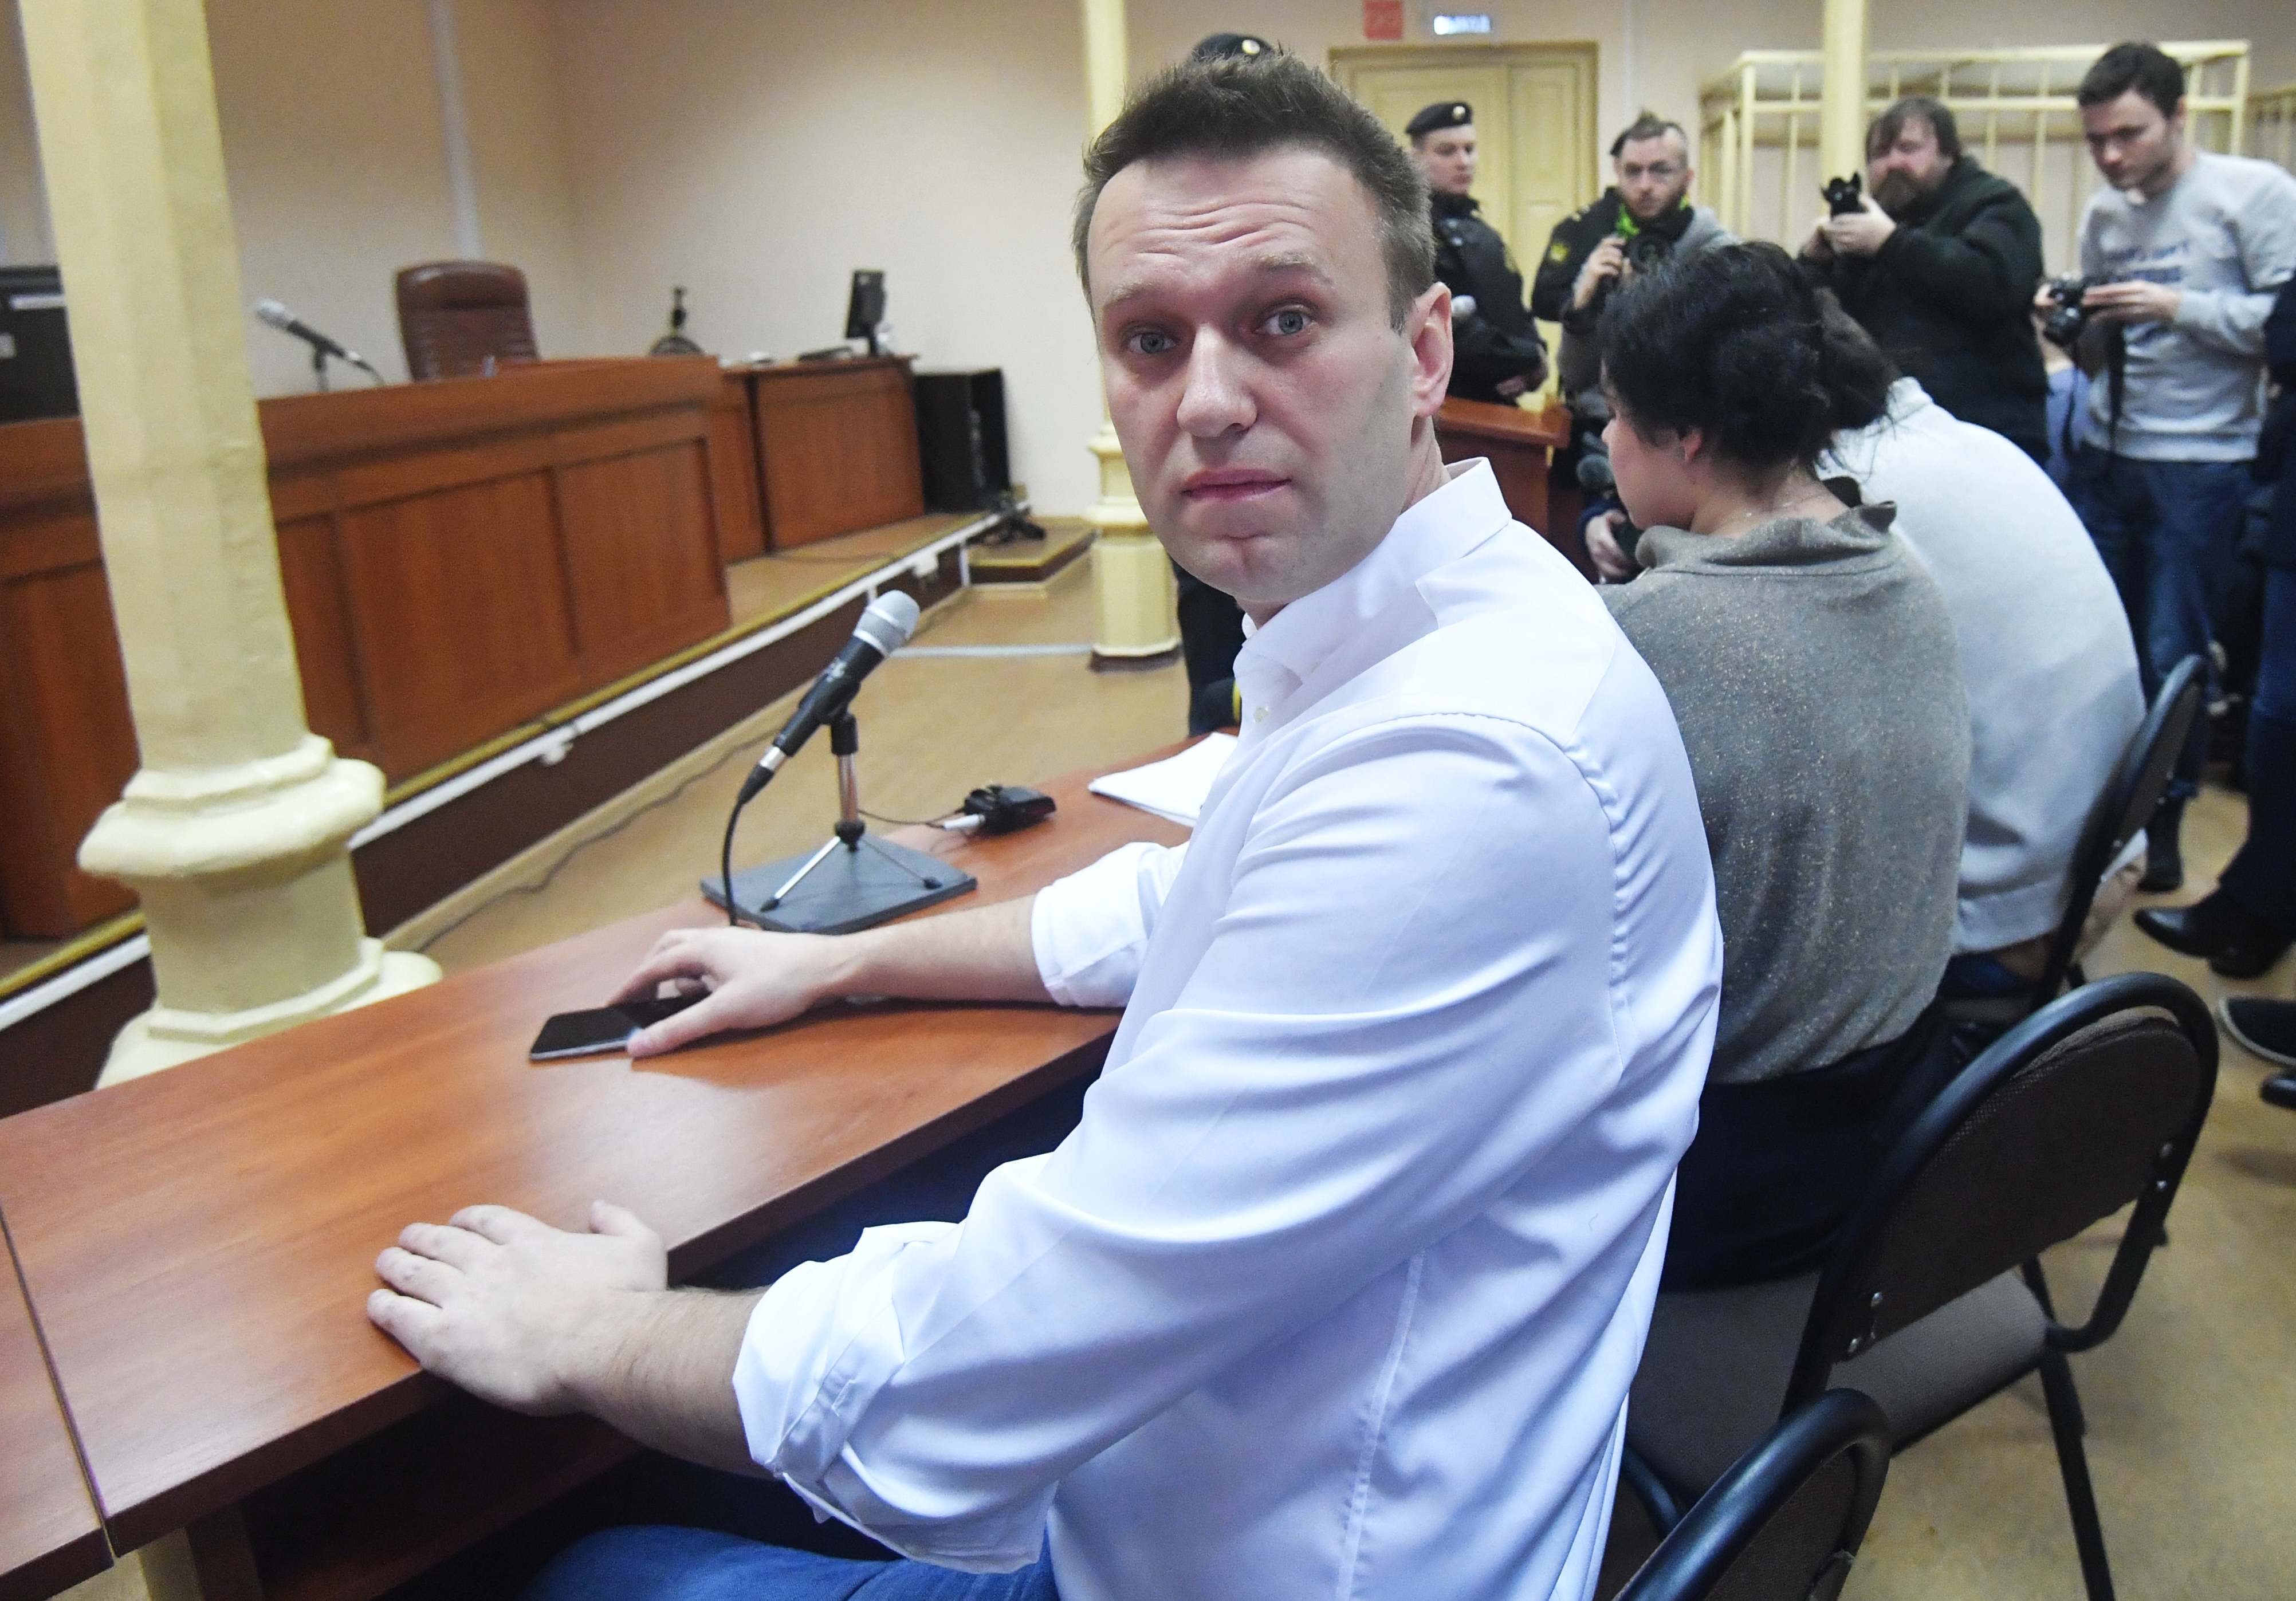 Összesen 64 ezer euró kártérítést ítélt meg Alekszej Navalnij orosz ellenzéki politikusnak a strasbourgi emberi jogi bíróság